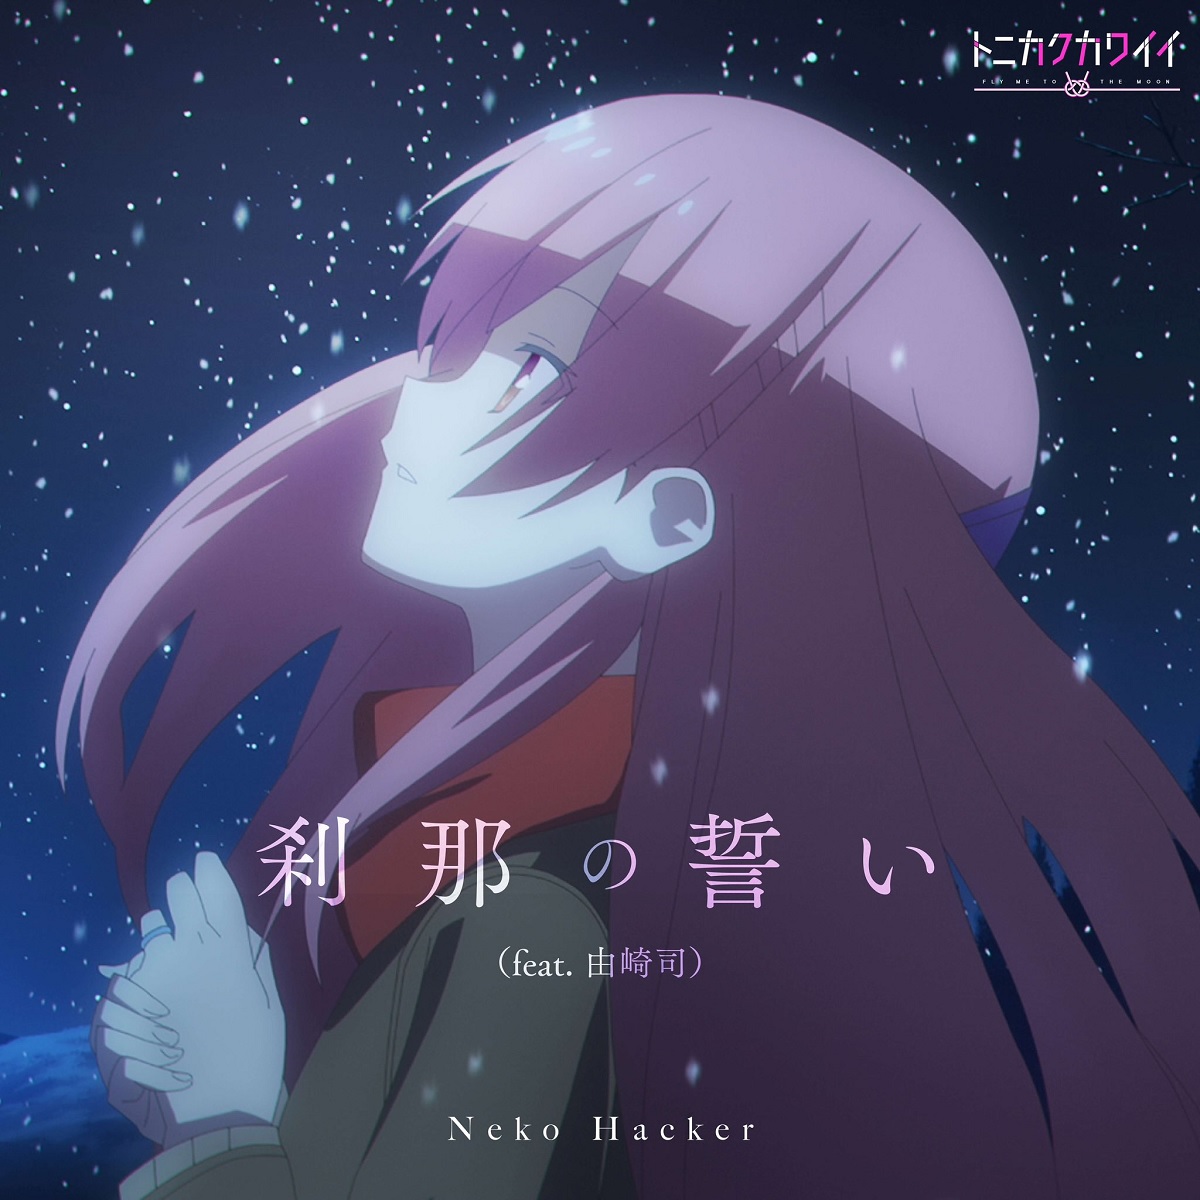 Cover art for『Neko Hacker - Setsuna no Chikai (feat. Tsukasa Yuzaki)』from the release『Setsuna no Chikai (feat. Tsukasa Yuzaki)』